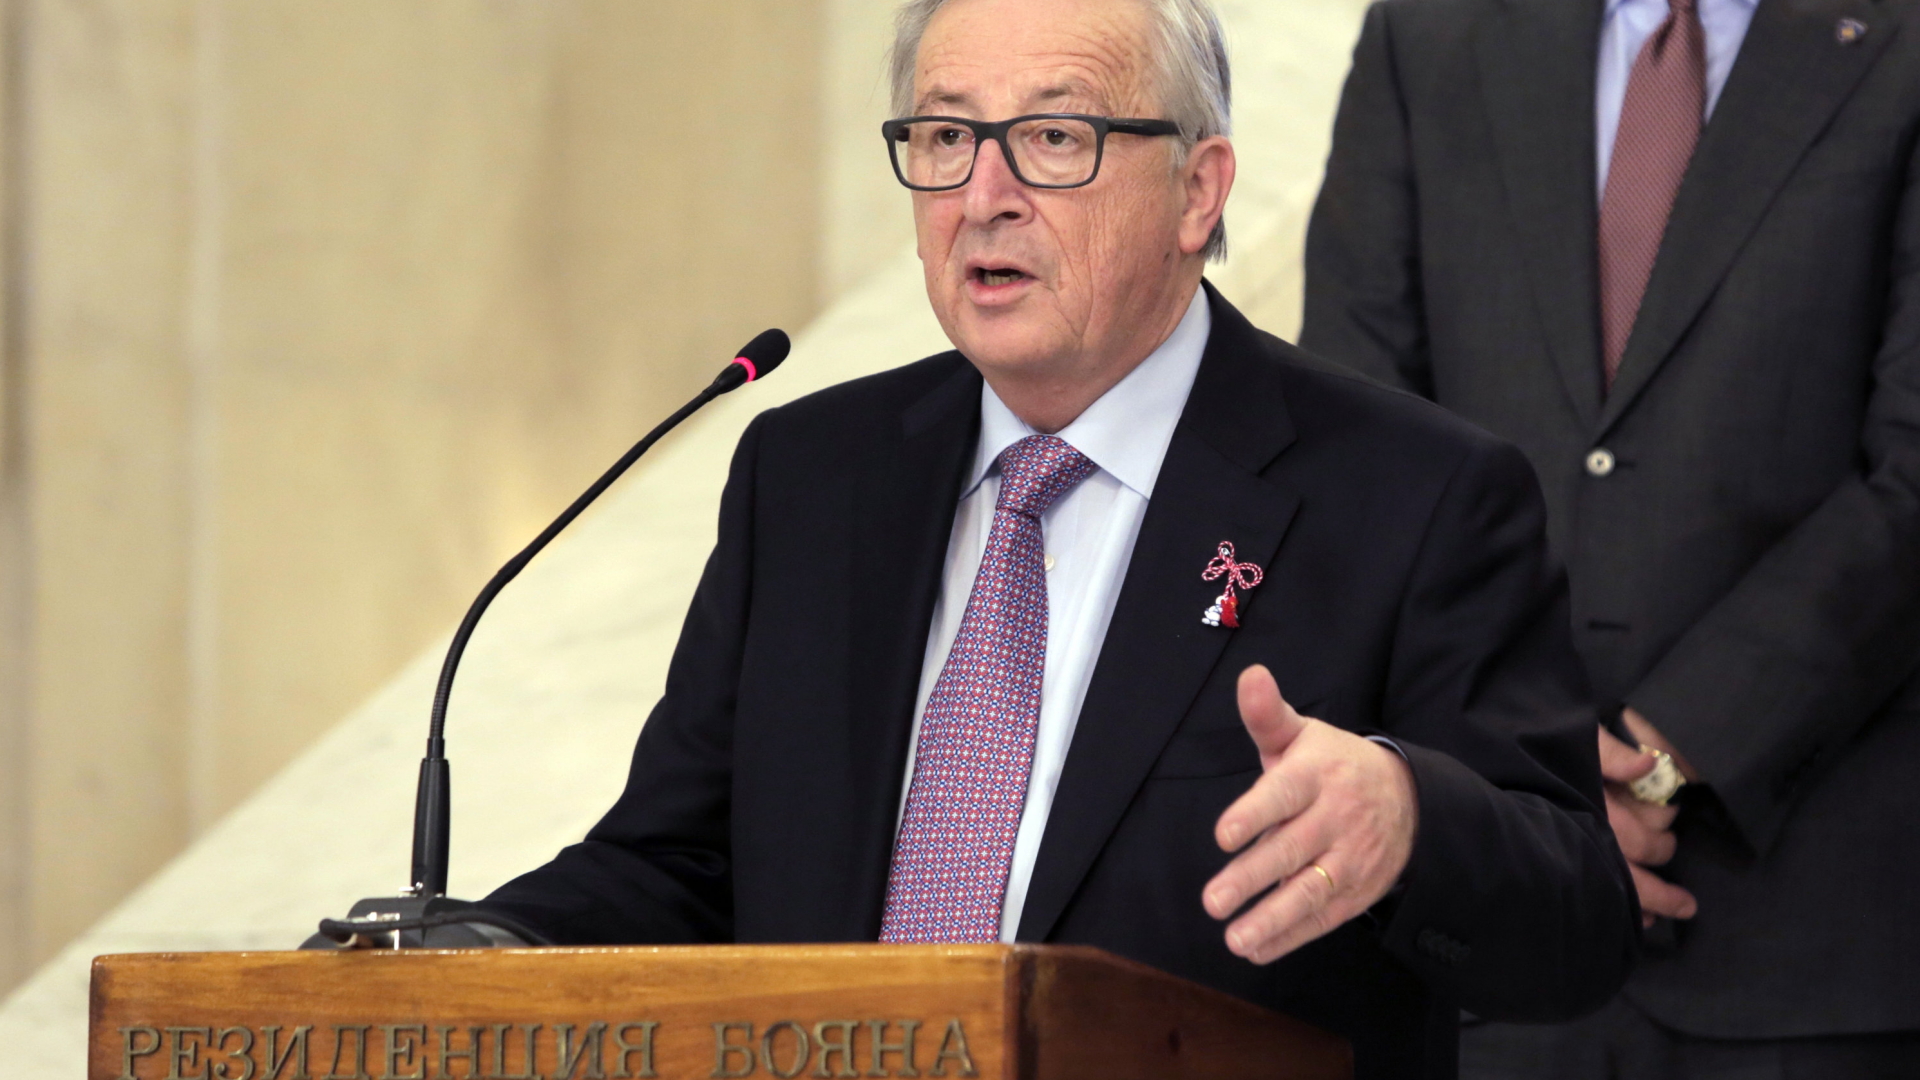 EU-Kommissionspräsident Jean-Claude Juncker in Bojana bei Sofia zum Abschluss einer Reise in sechs Staaten auf dem Balkan. 01.03.2018. | dpa